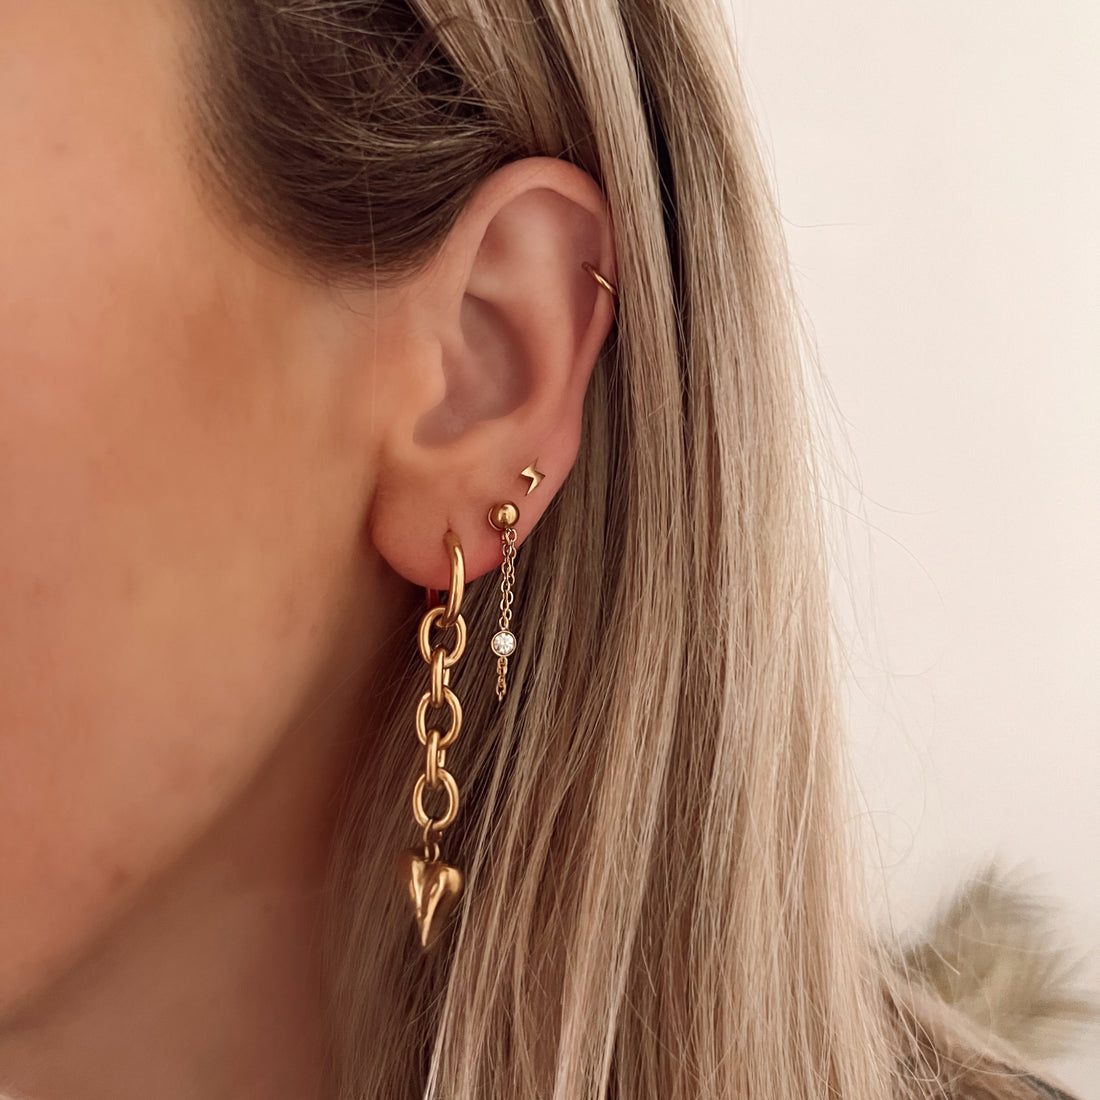 Zircon chain earrings